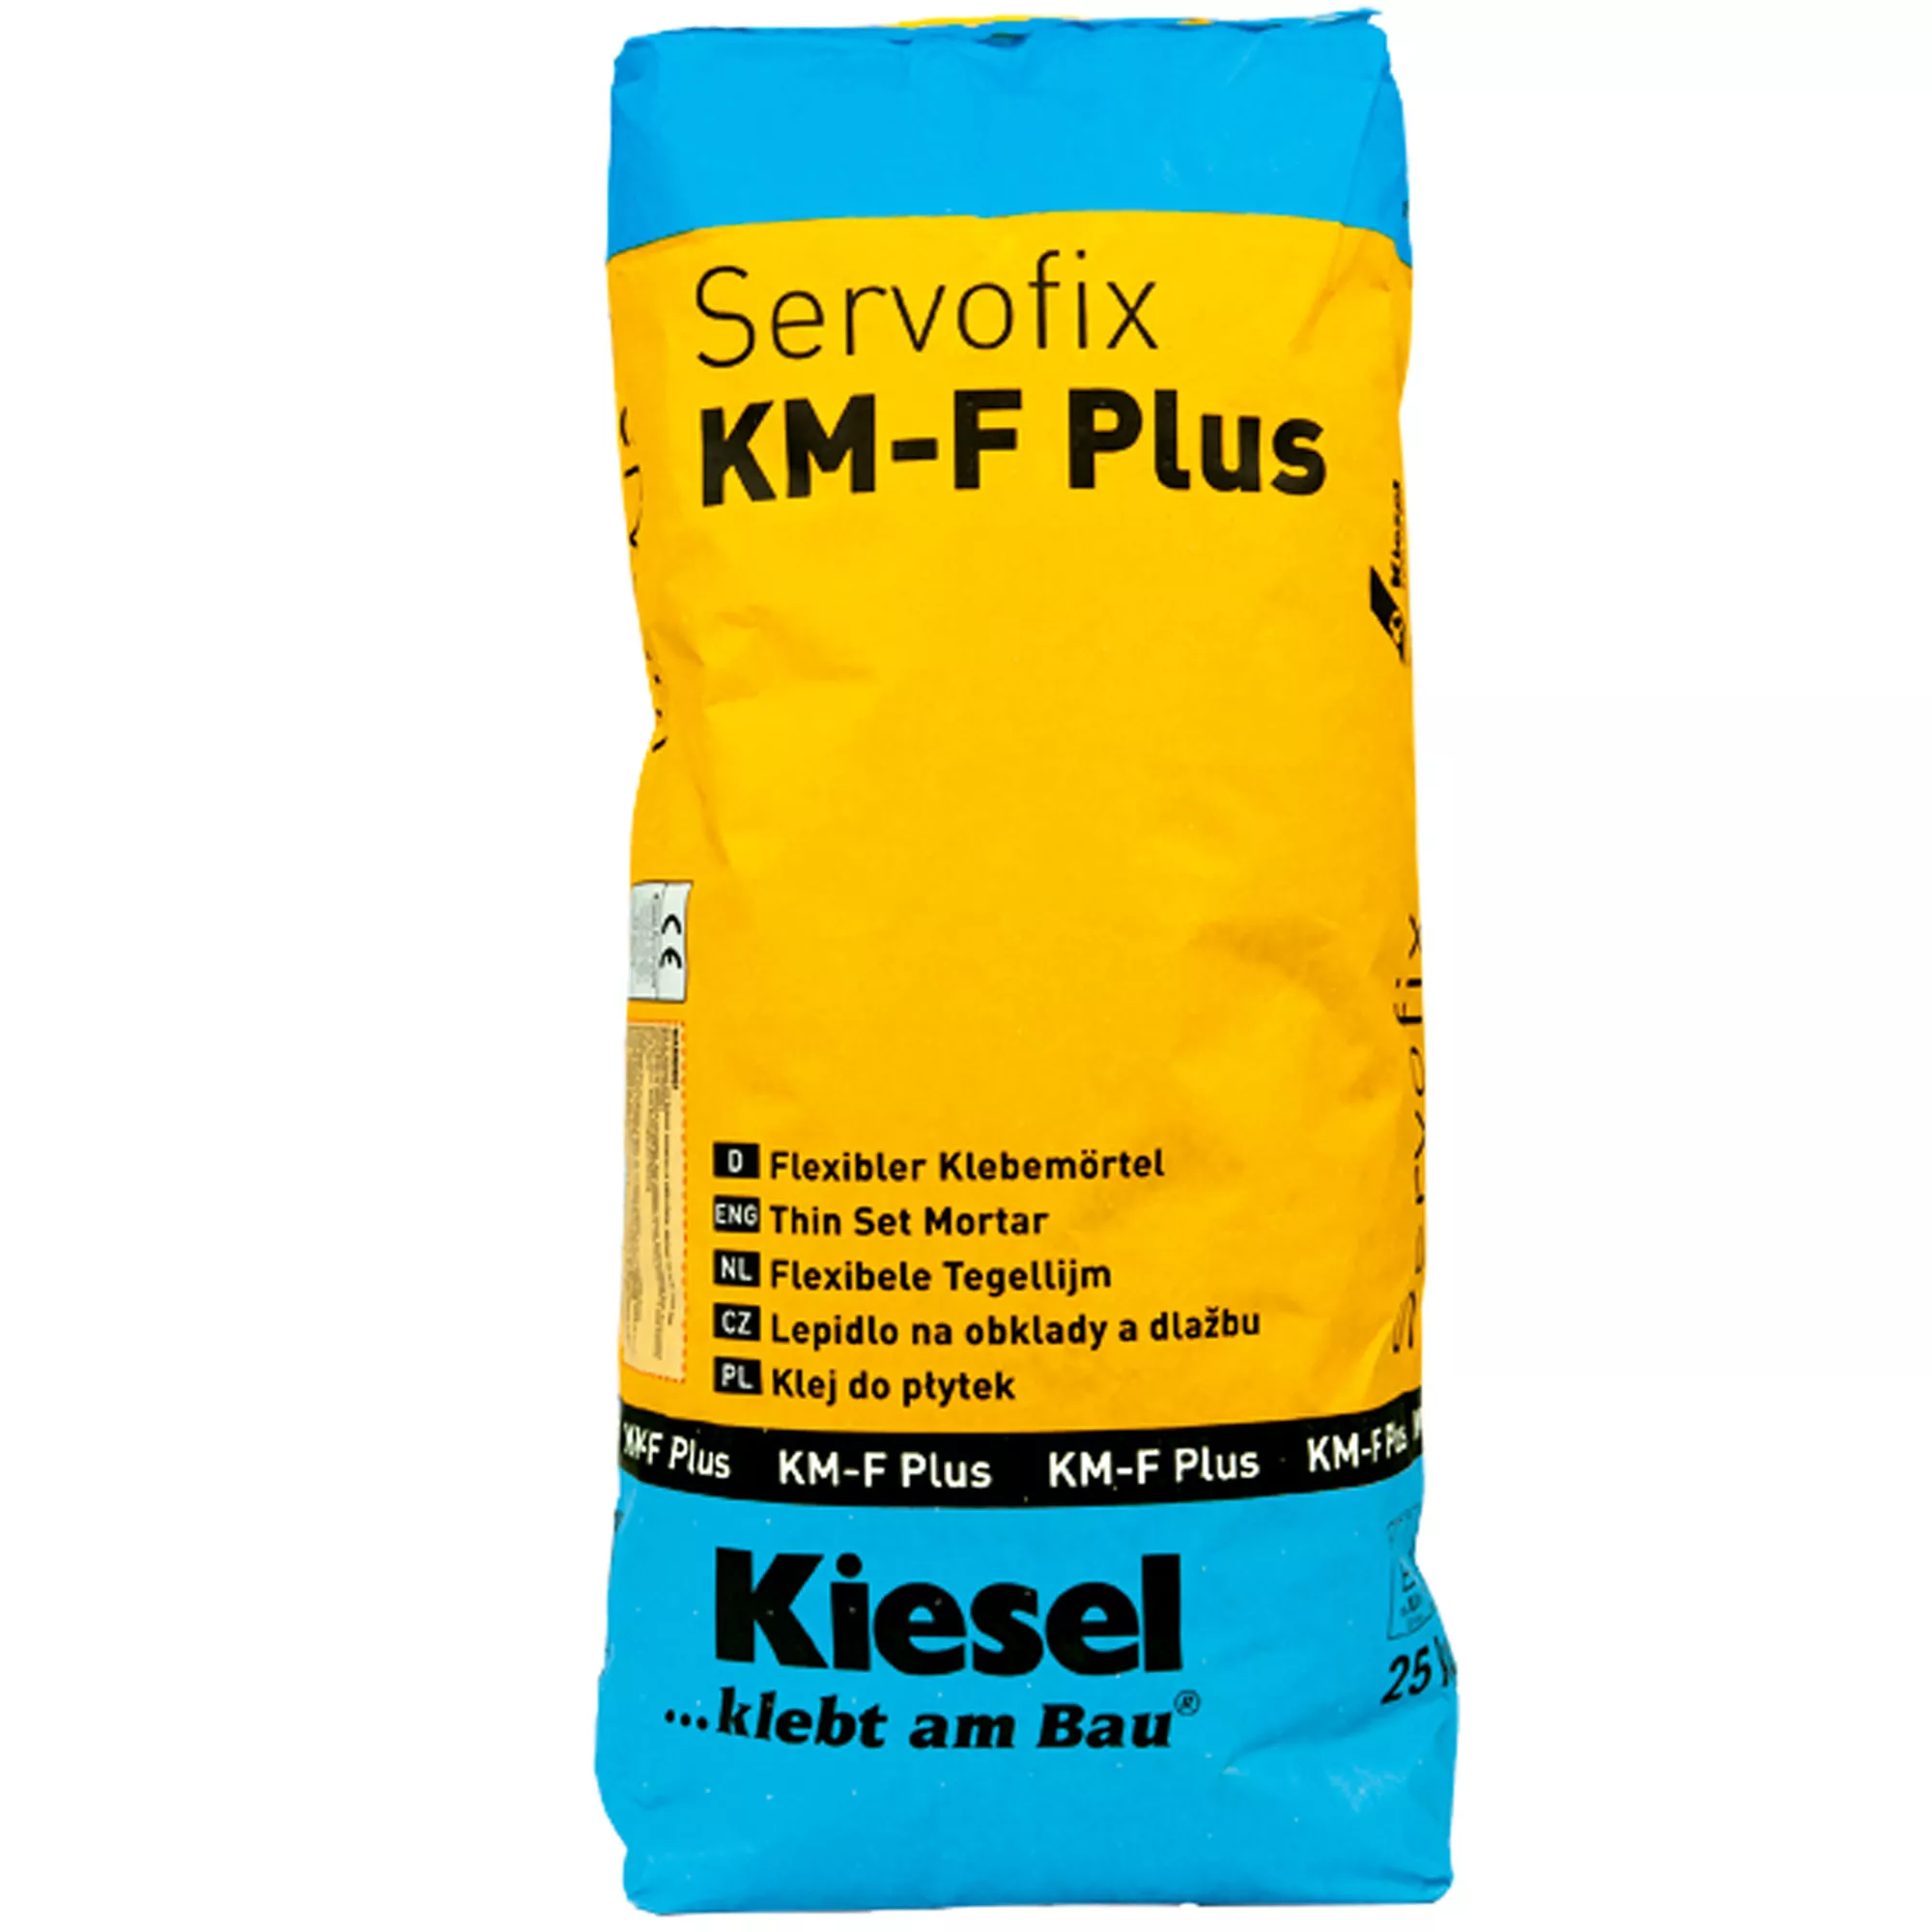 Kiesel-laattaliima Servofix KM-F Plus - joustava liimalama 25 kg